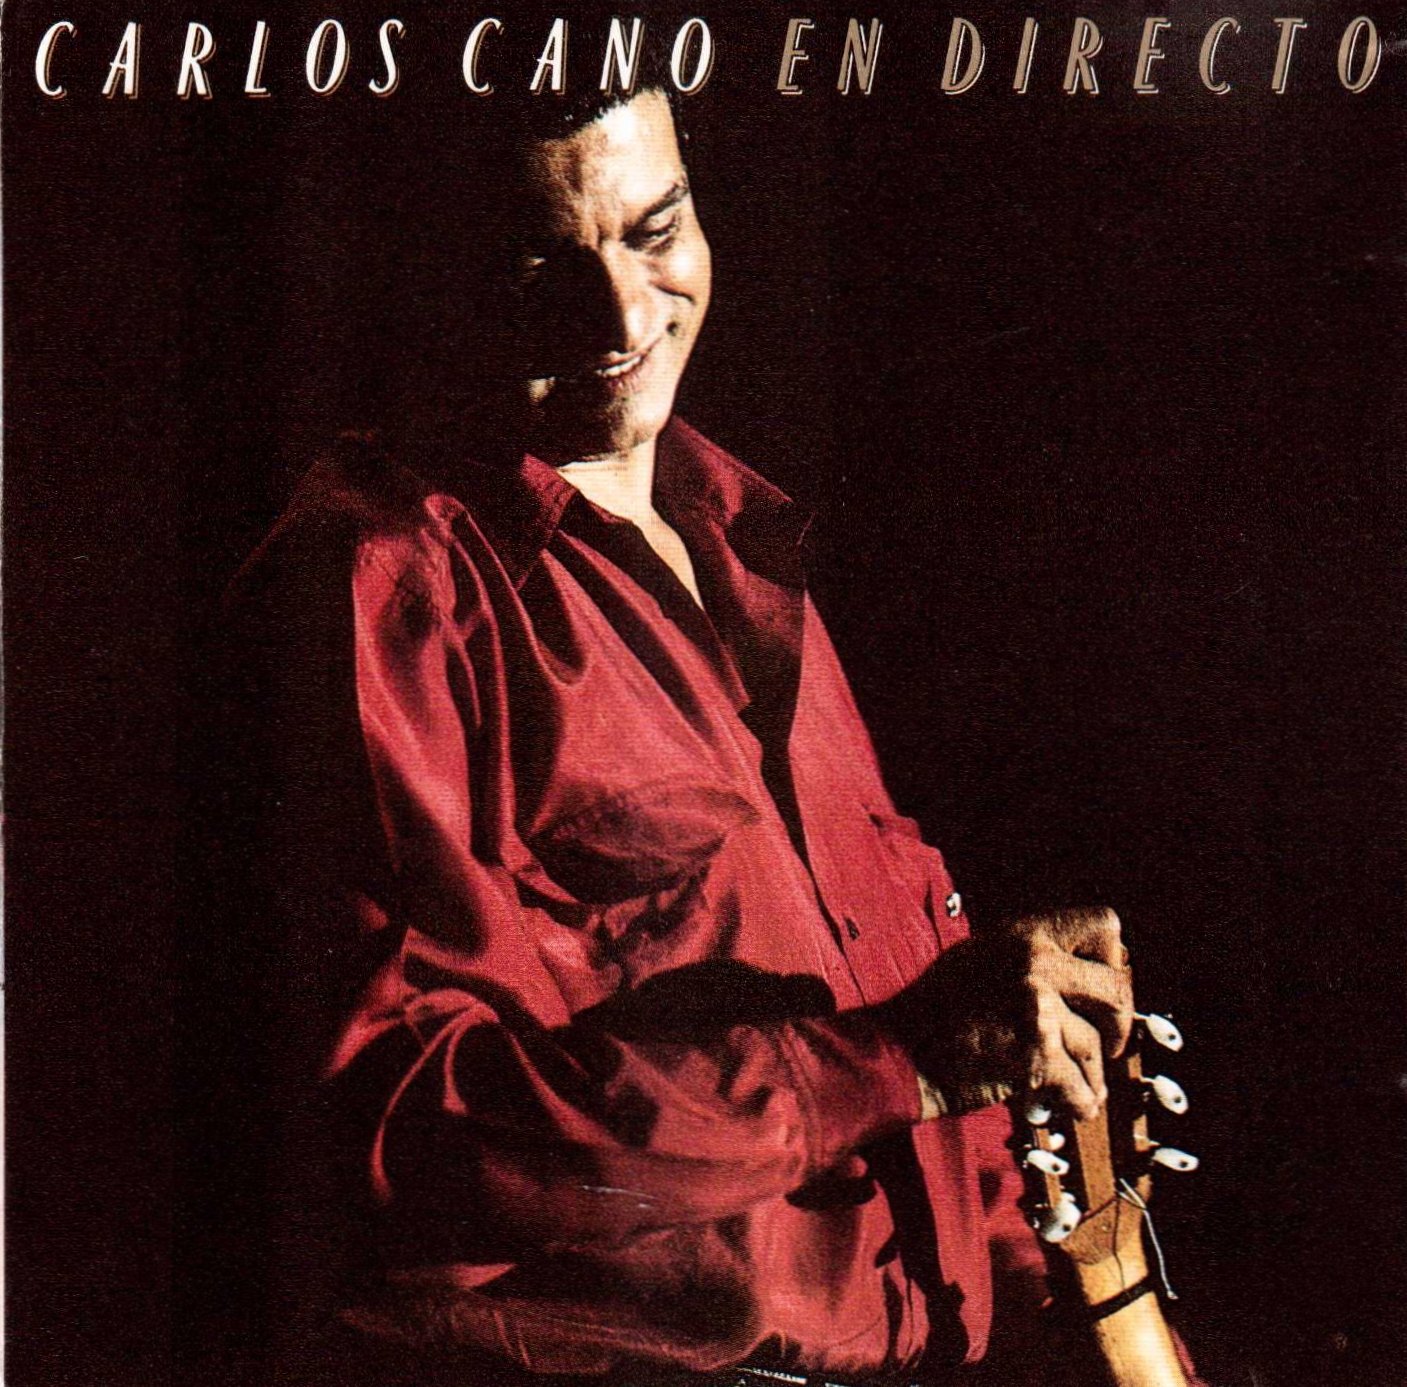 Carlos Cano-En Directo-ES-CD-FLAC-1990-MAHOU